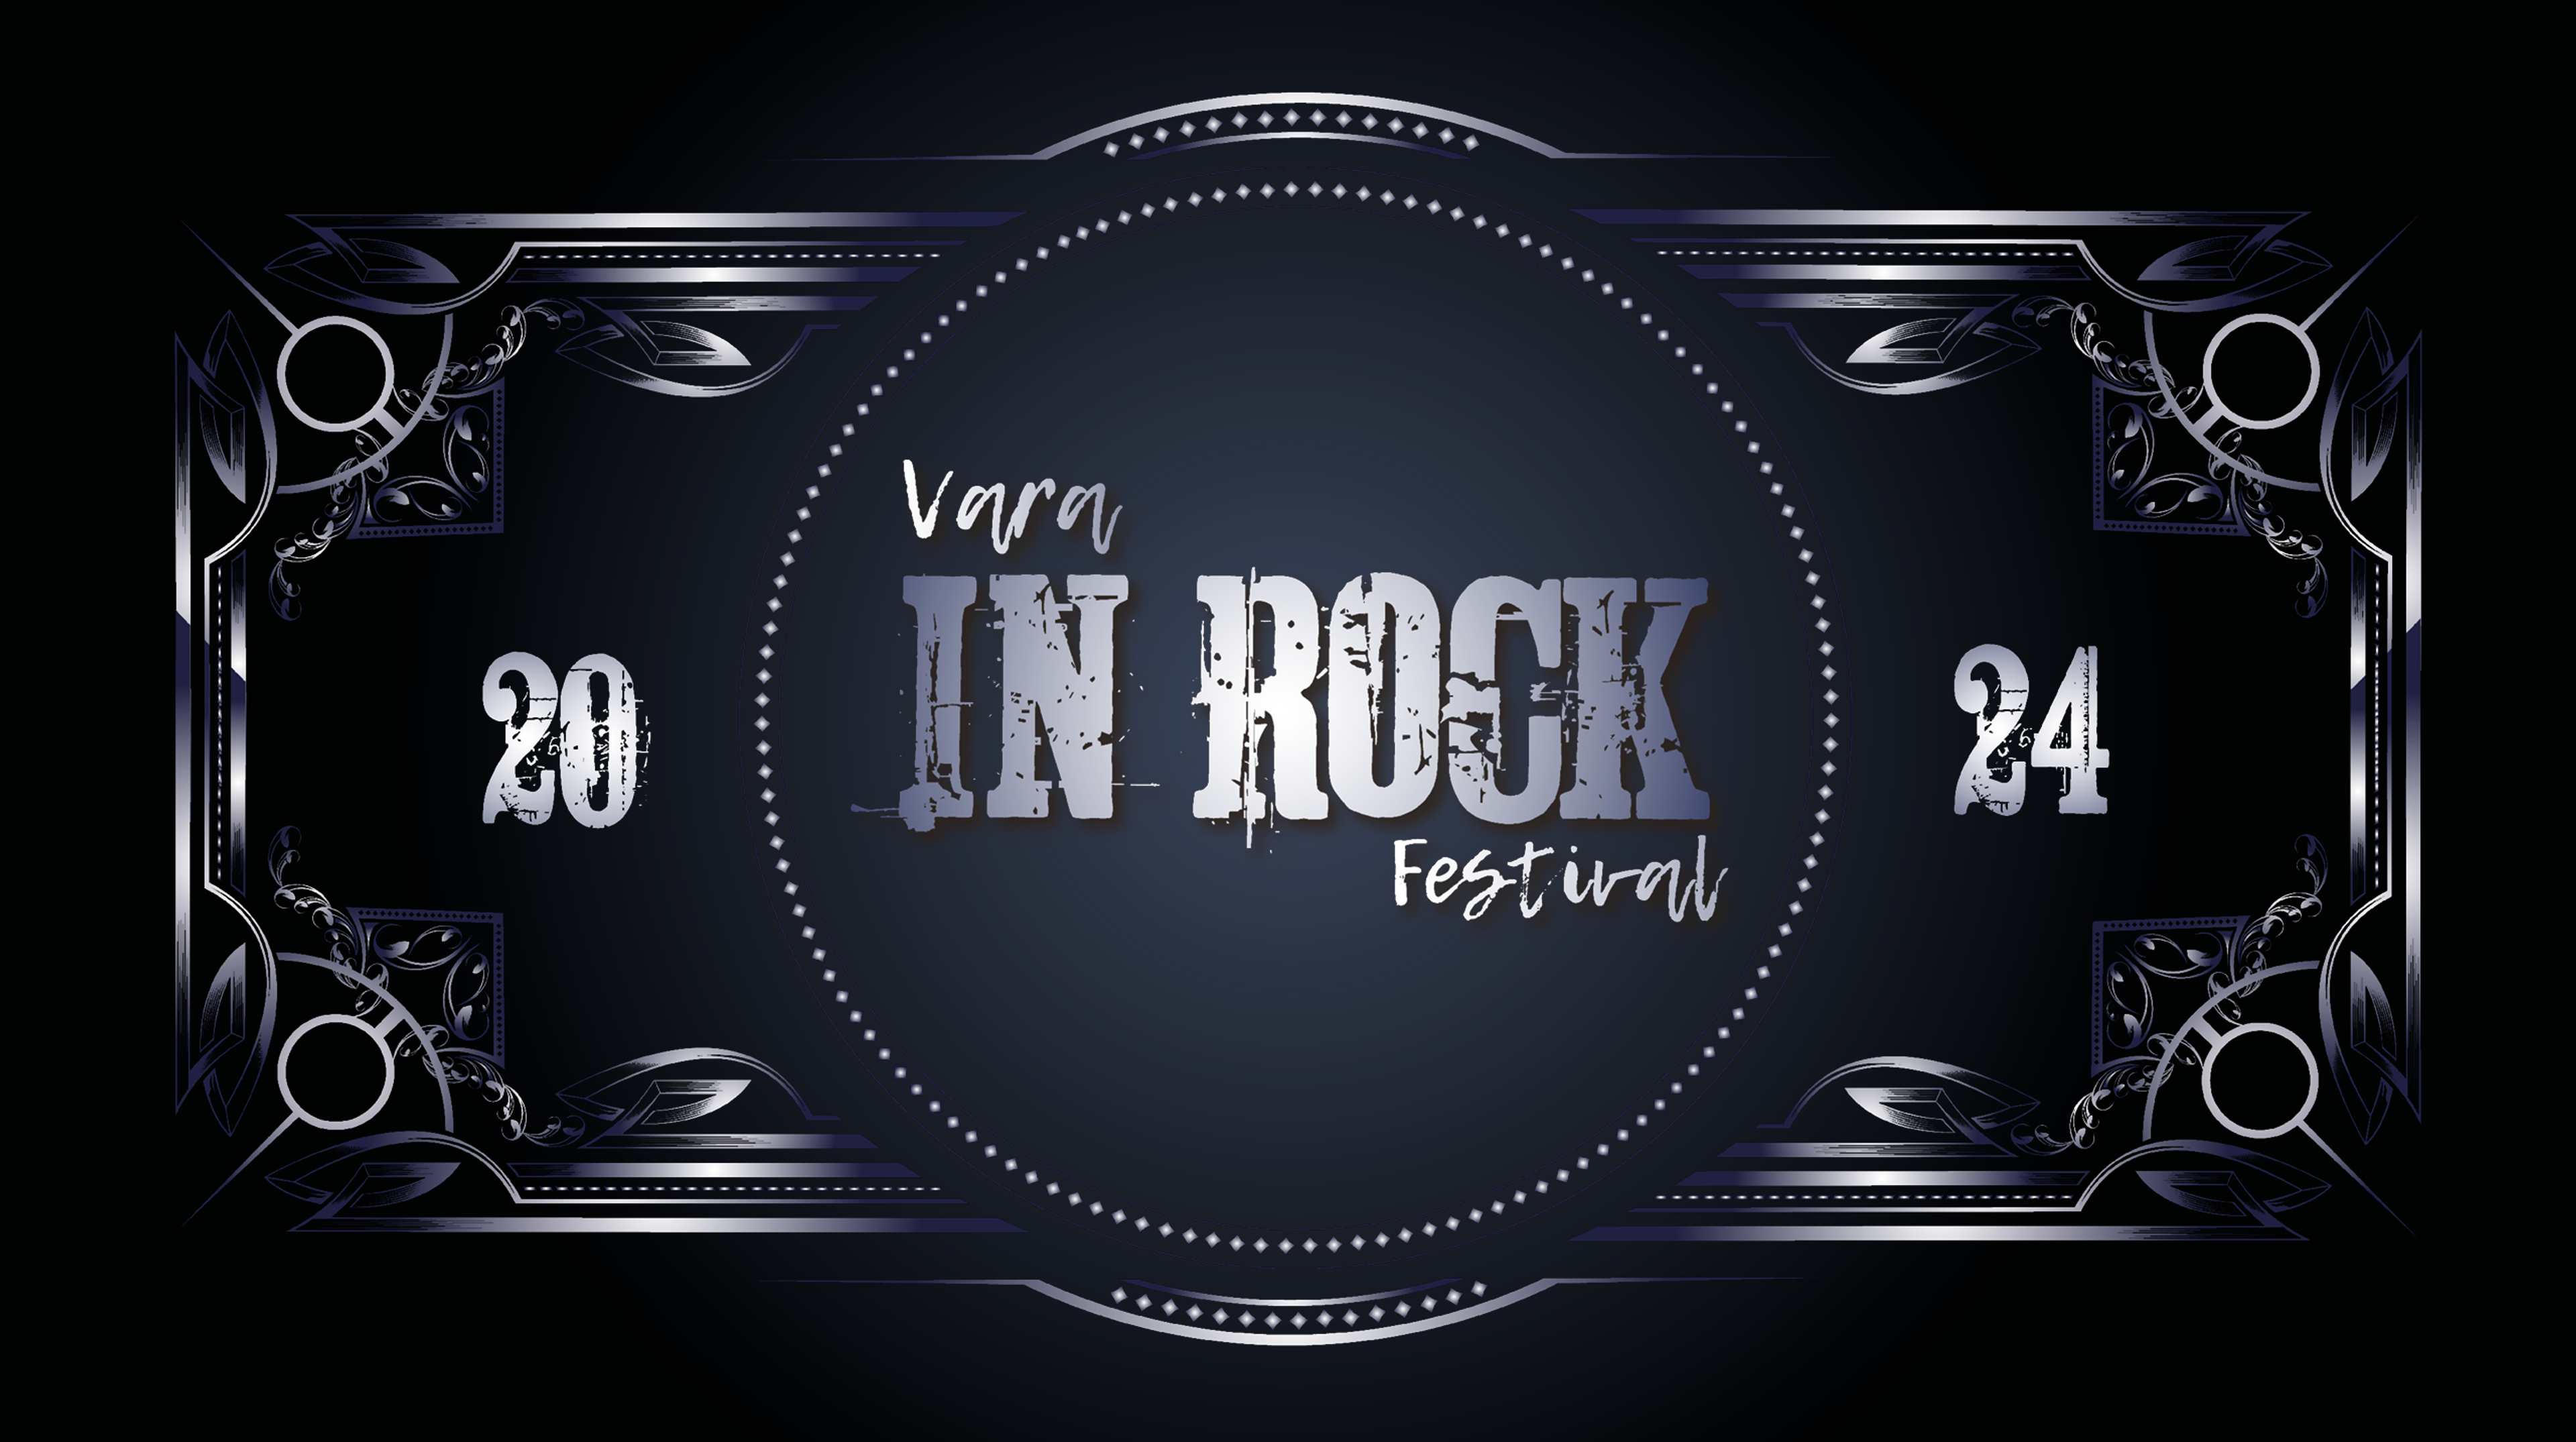 Text: Vara In Rock Festival